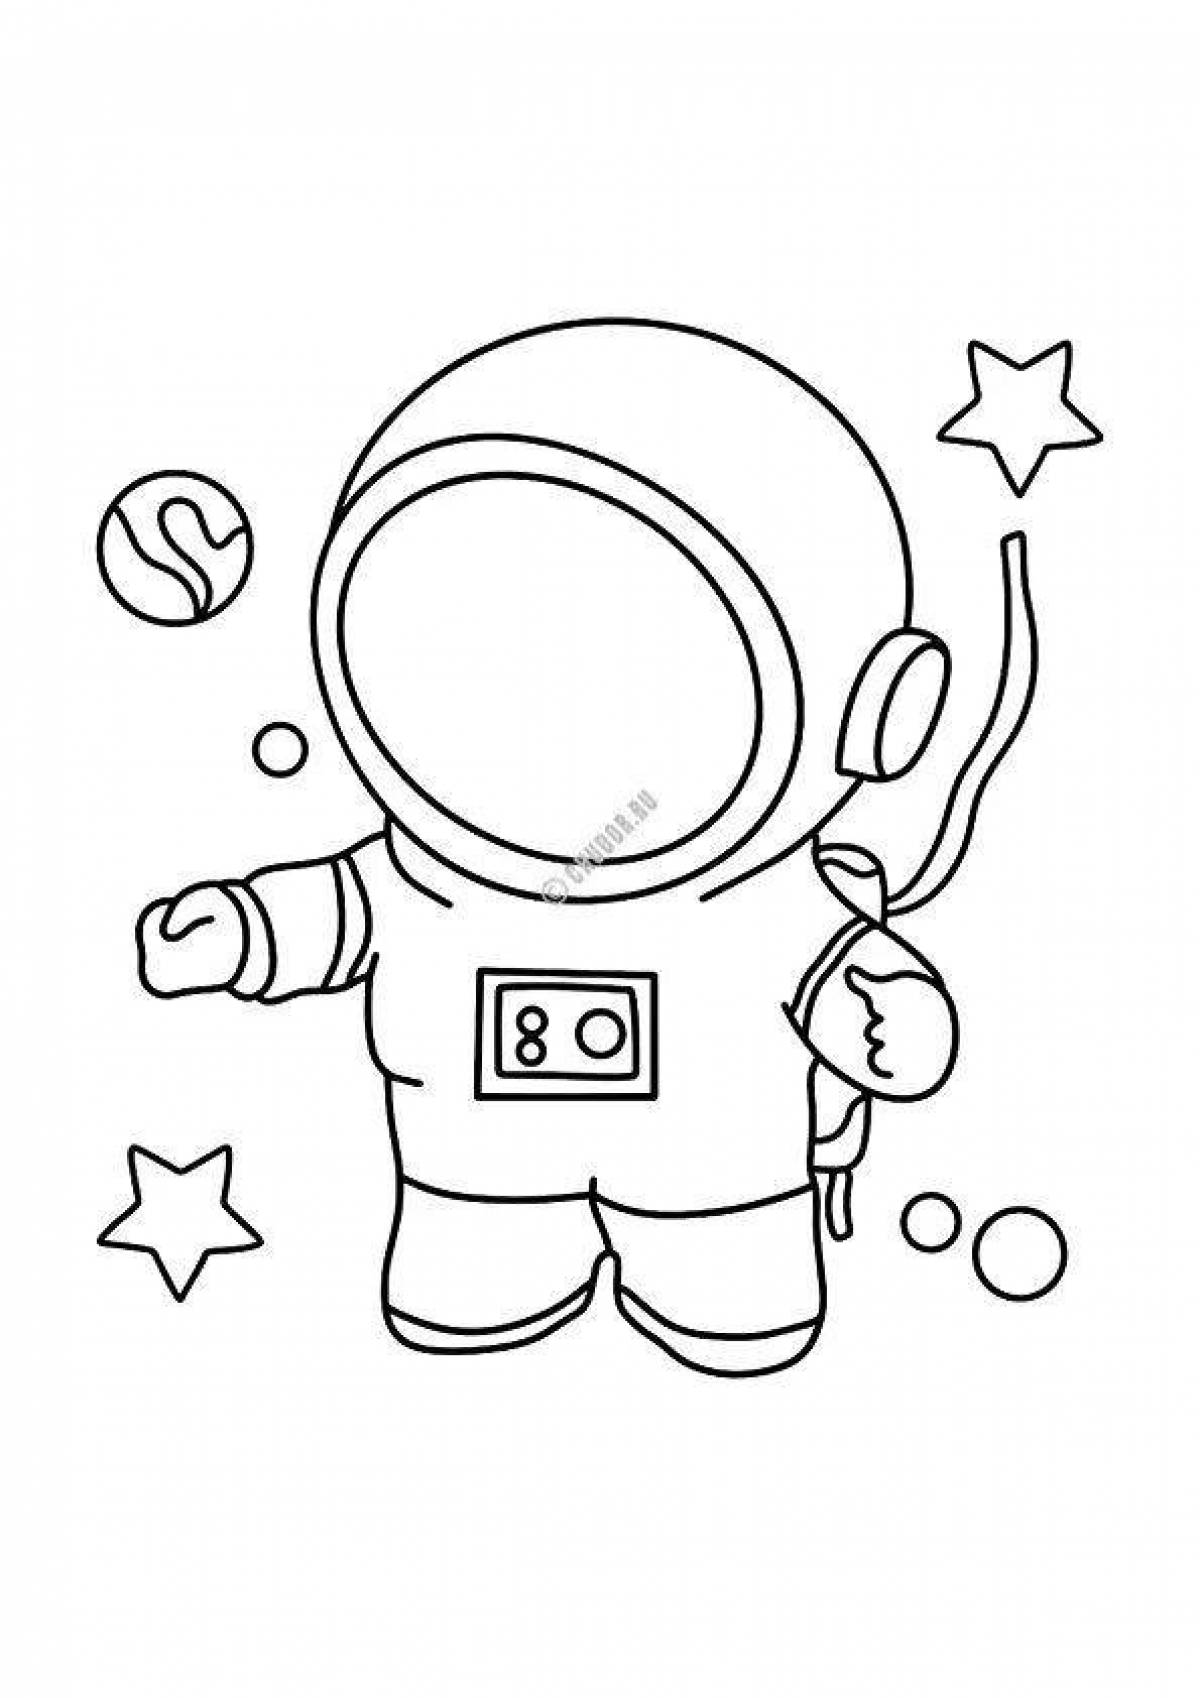 Распечатать космонавта для поделки. Космонавт раскраска. Космонавт раскраска для детей. Космонавт для раскрашивания для детей. Космонавт раскраска для малышей.